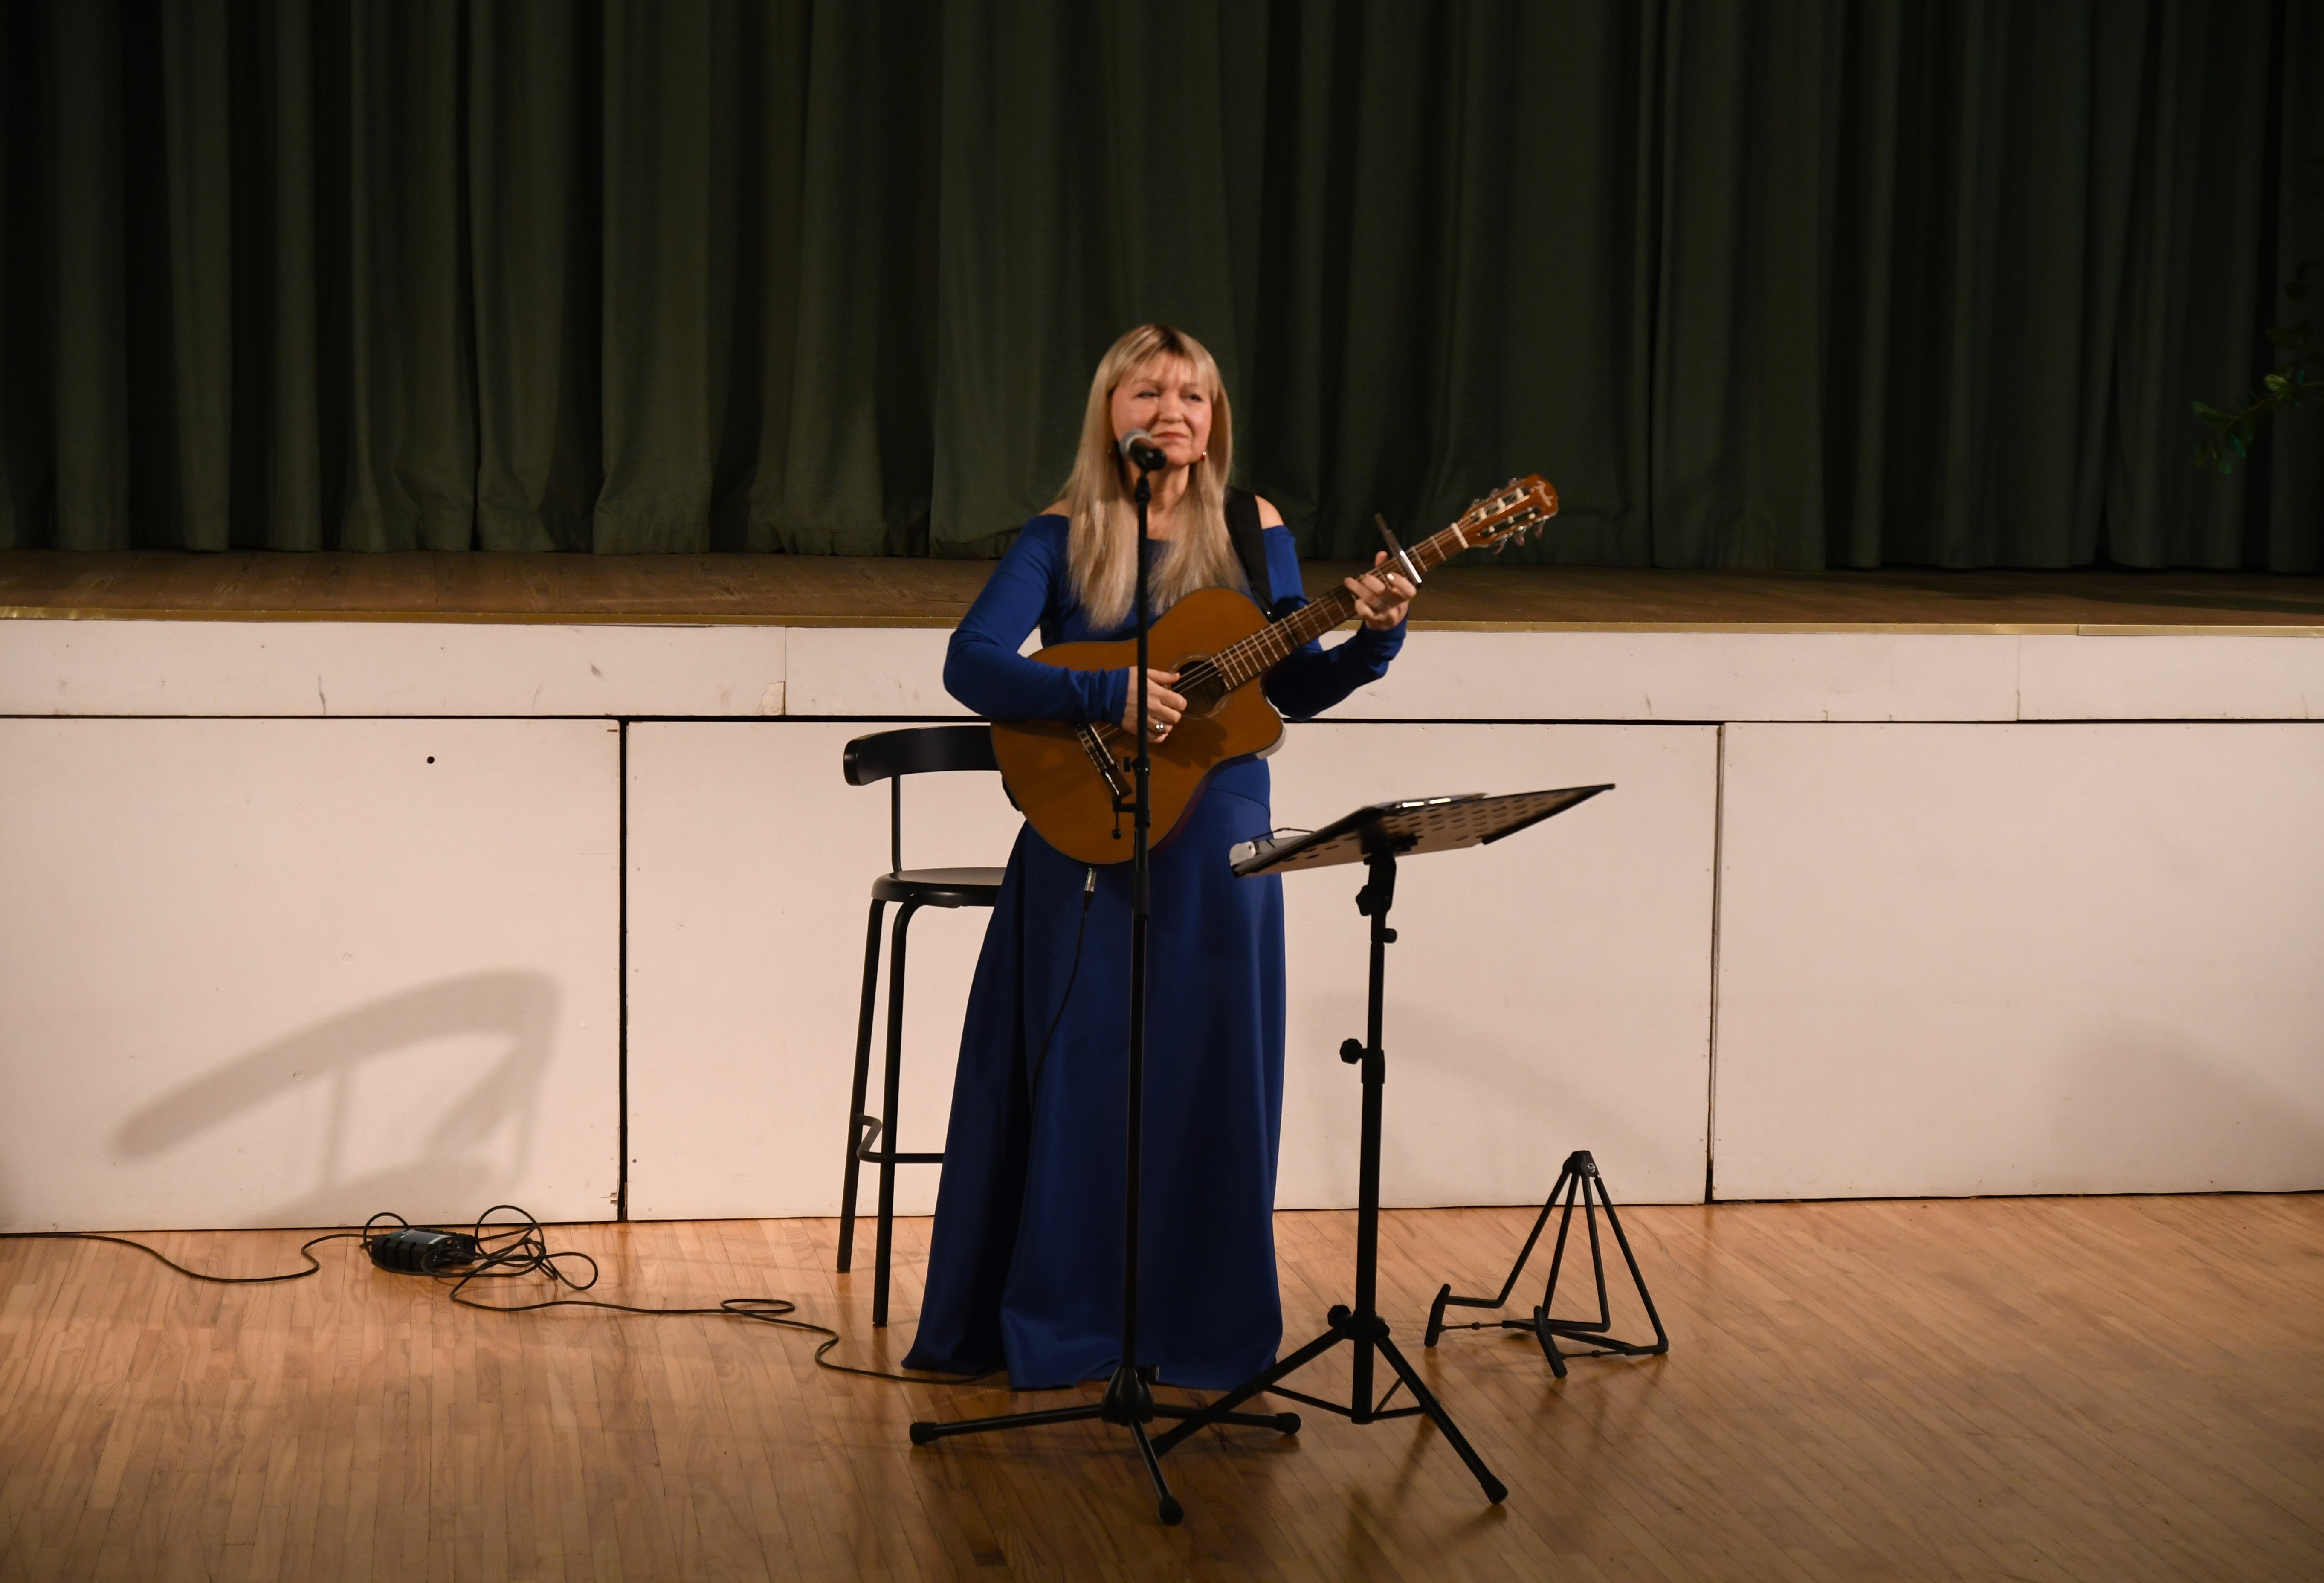 Sieviete zilā garā kleitā ar ģitāru pie mikrofona stāv un dzied